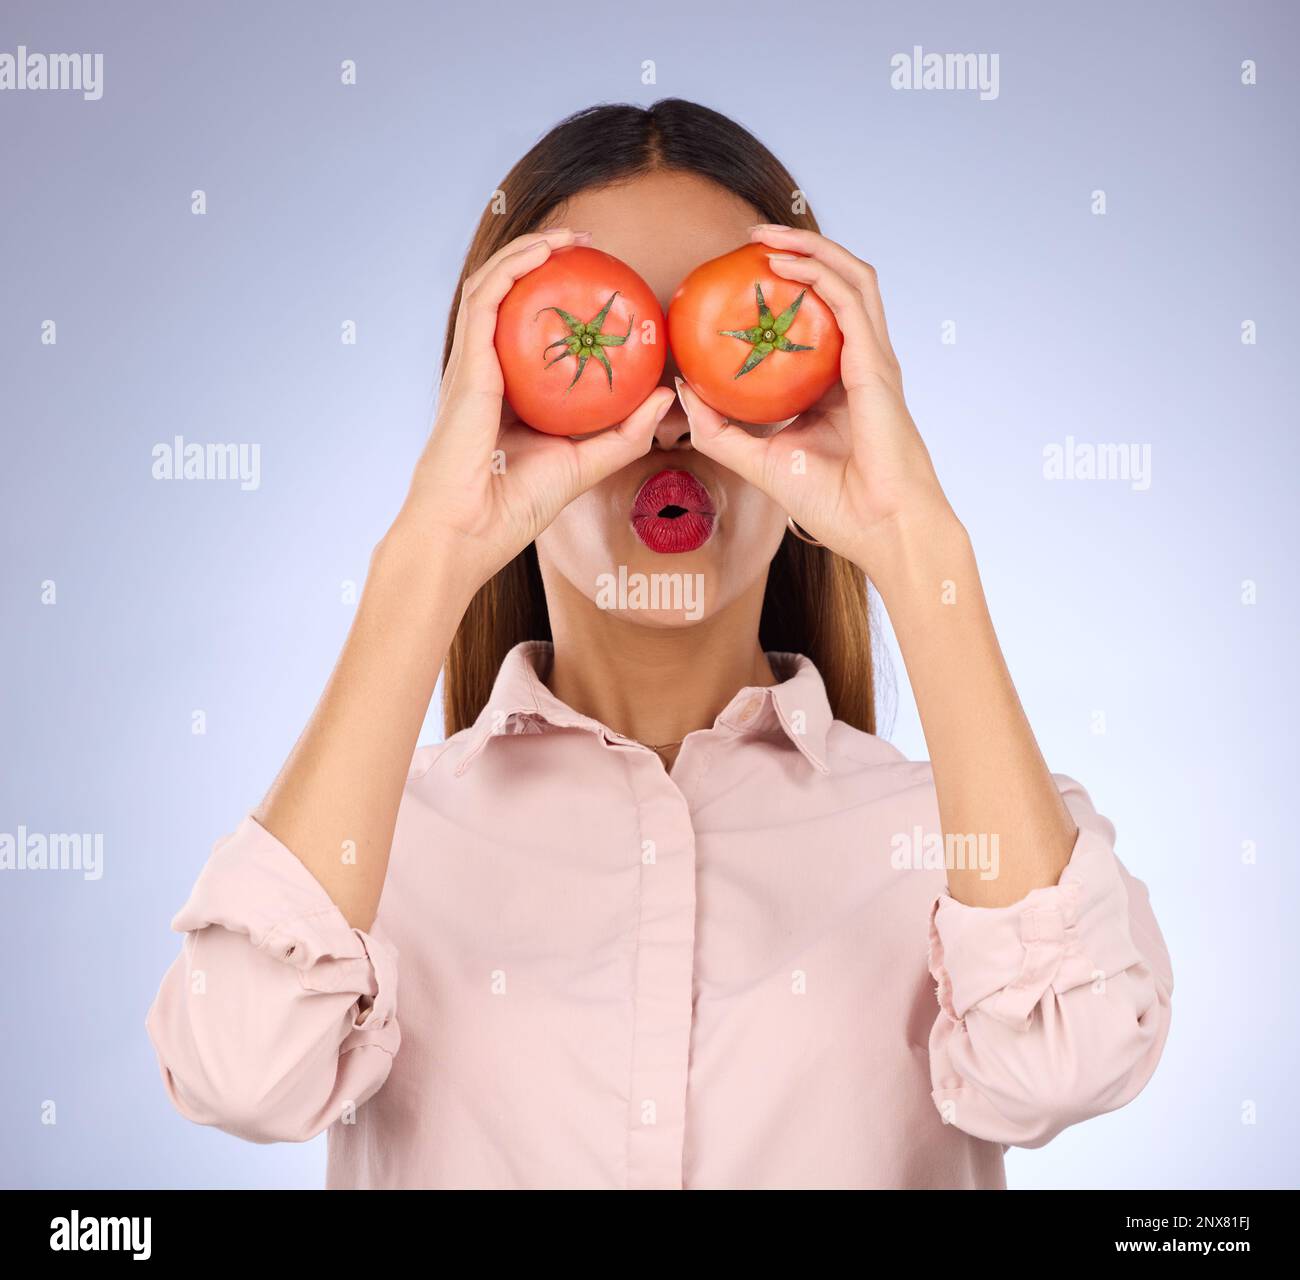 Femme, tomate et les yeux de couverture en studio pour la nourriture saine, le régime végétalien et les légumes dans les mains. Visage d'une personne modèle avec des légumes rouges pour la santé Banque D'Images